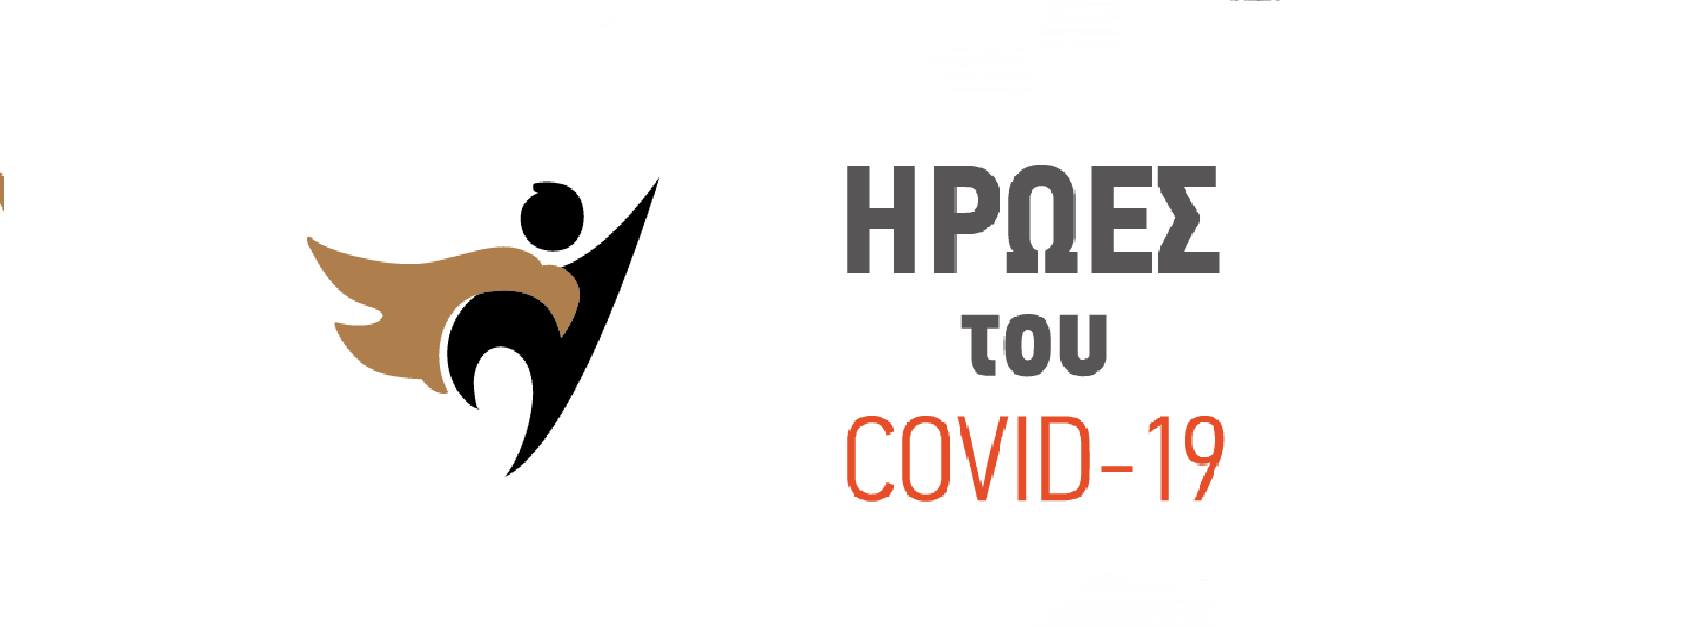  Οι Ήρωες του COVID-19 στη Βόρεια Ελλάδα | Εκδήλωση βράβευσης στο Βελλίδειο